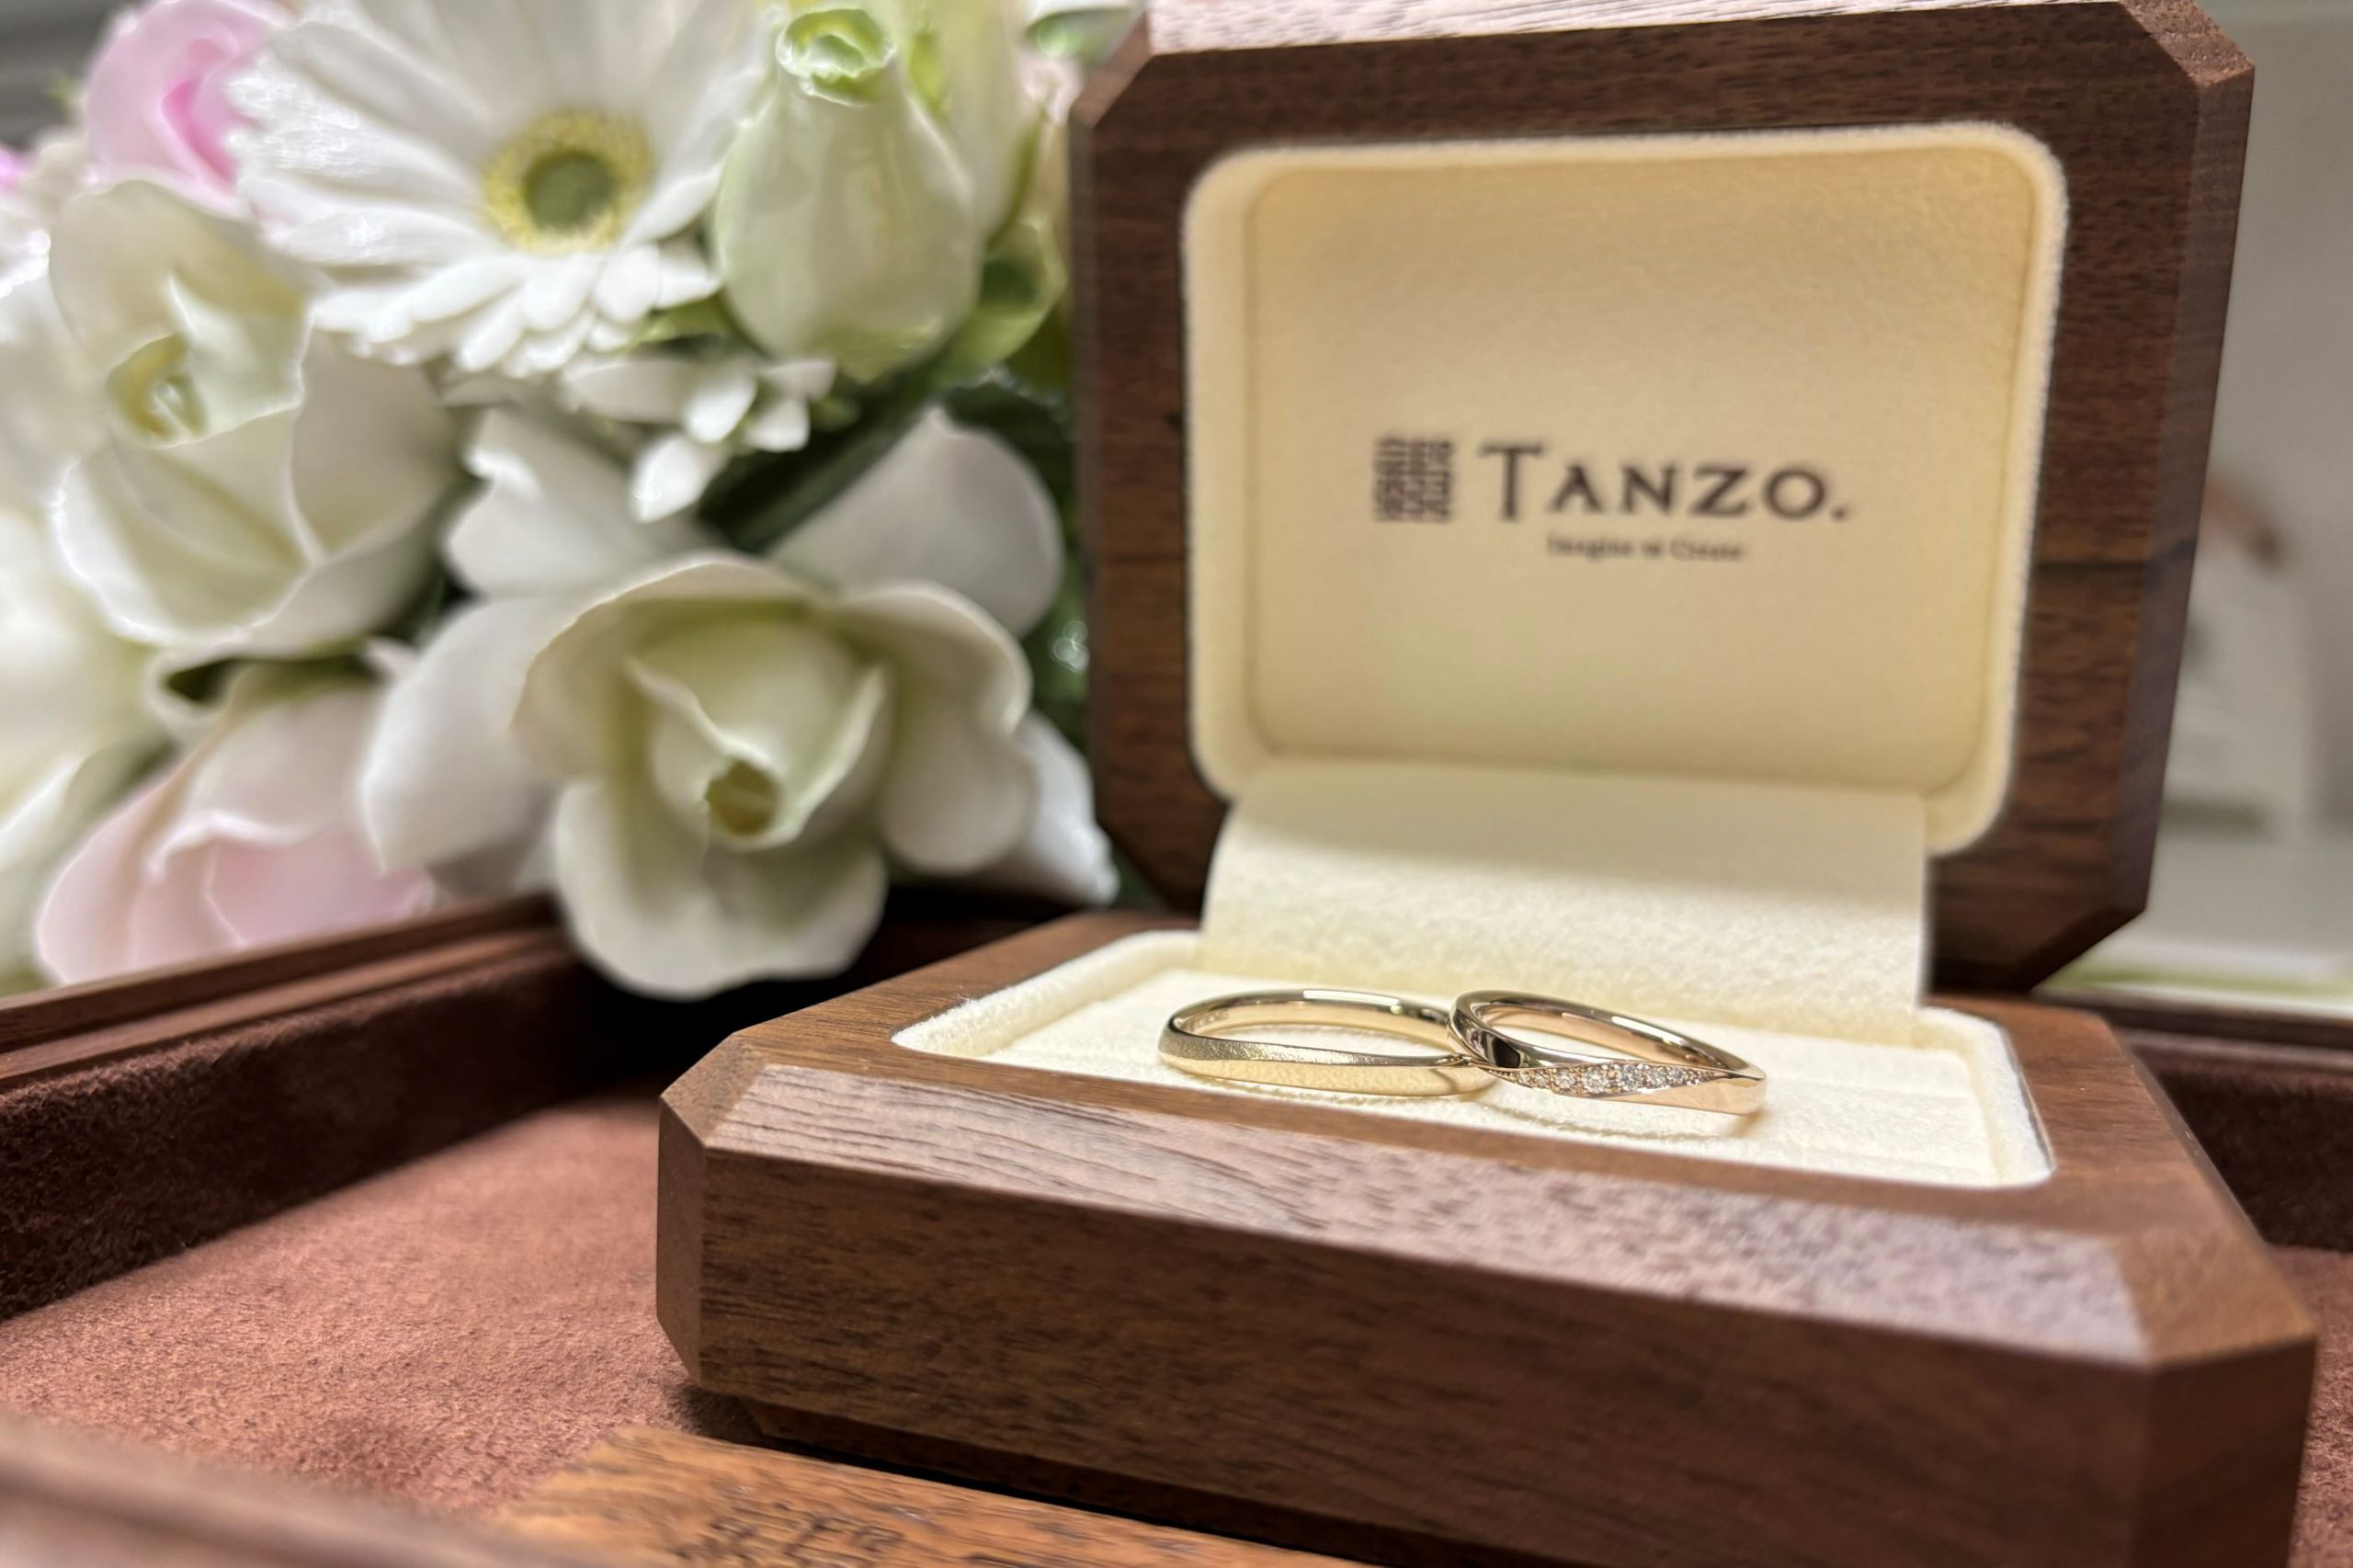 ピンクゴールドの輝きが美しい重厚感のあるご結婚指輪のサムネイル